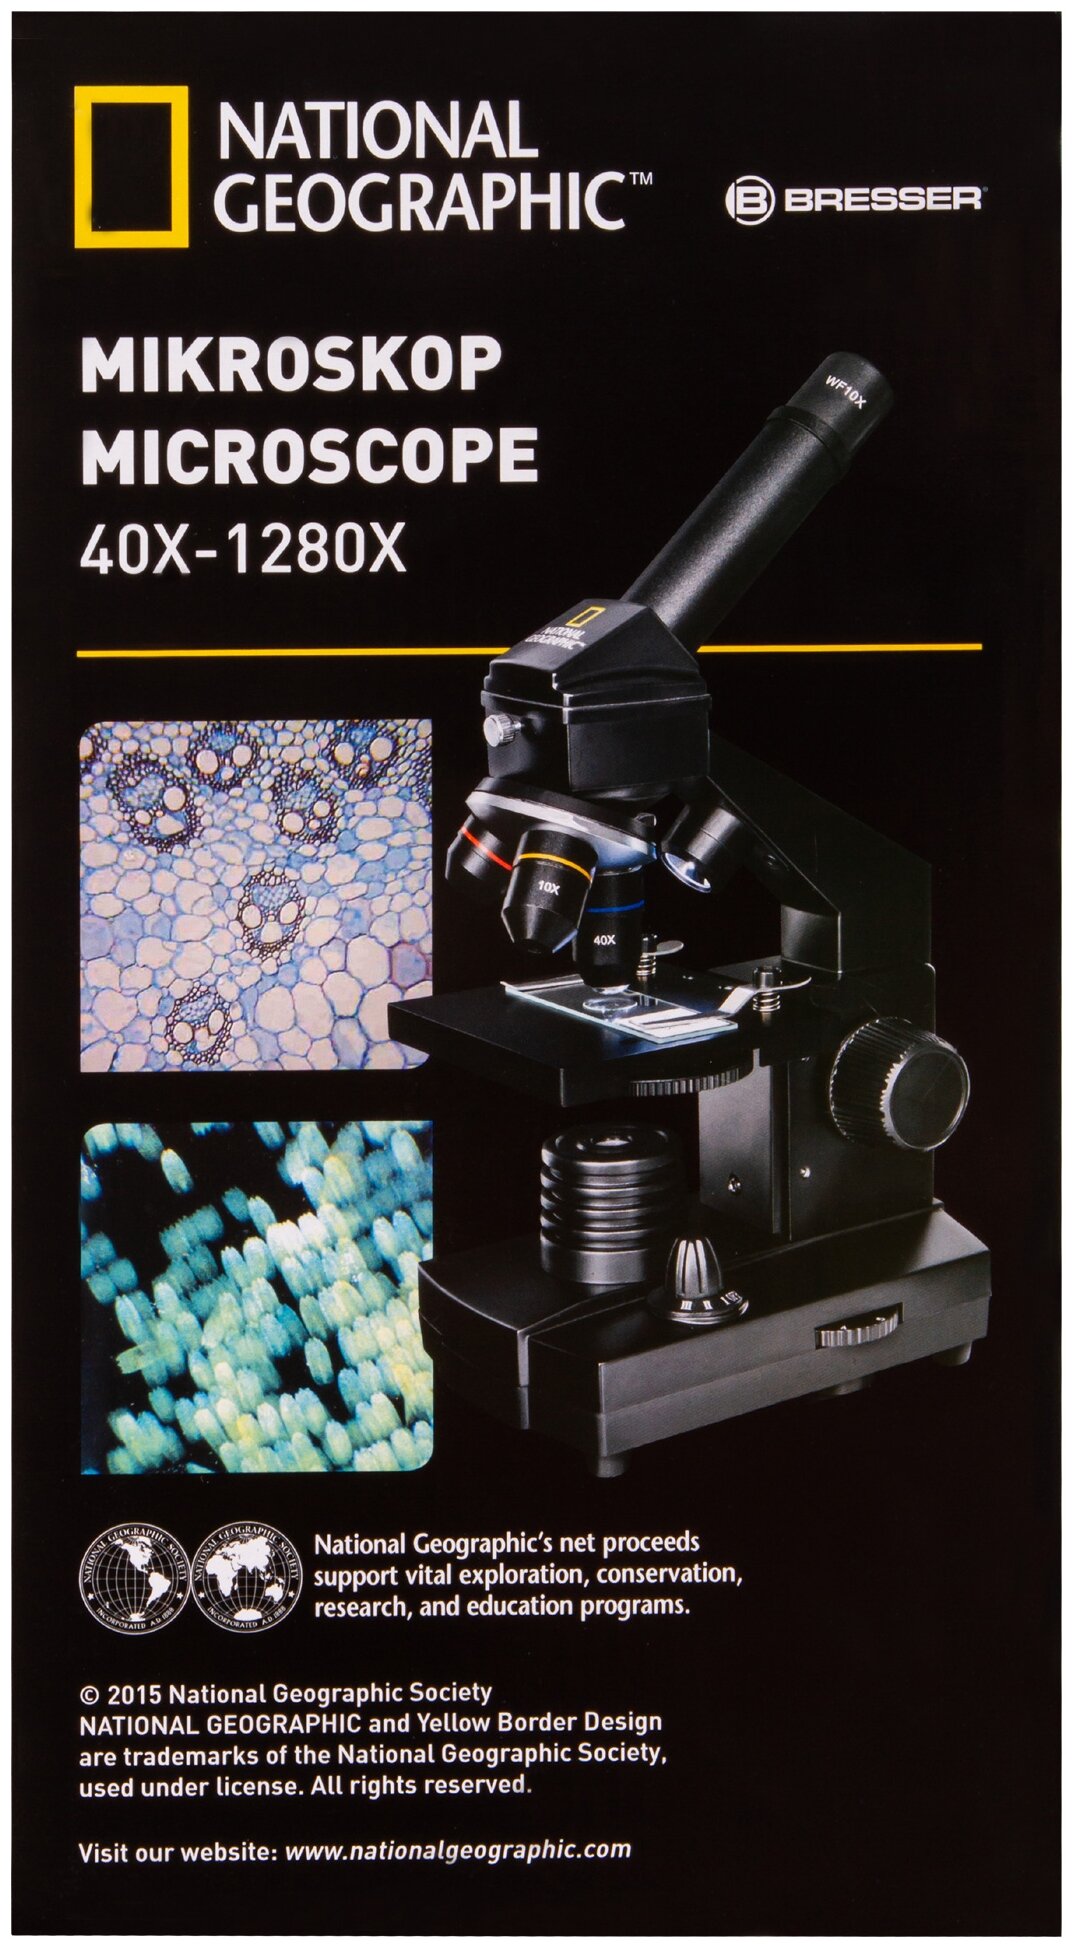 Bresser Микроскоп National Geographic 40x-1280x с держателем для смартфона. Цвет: черный